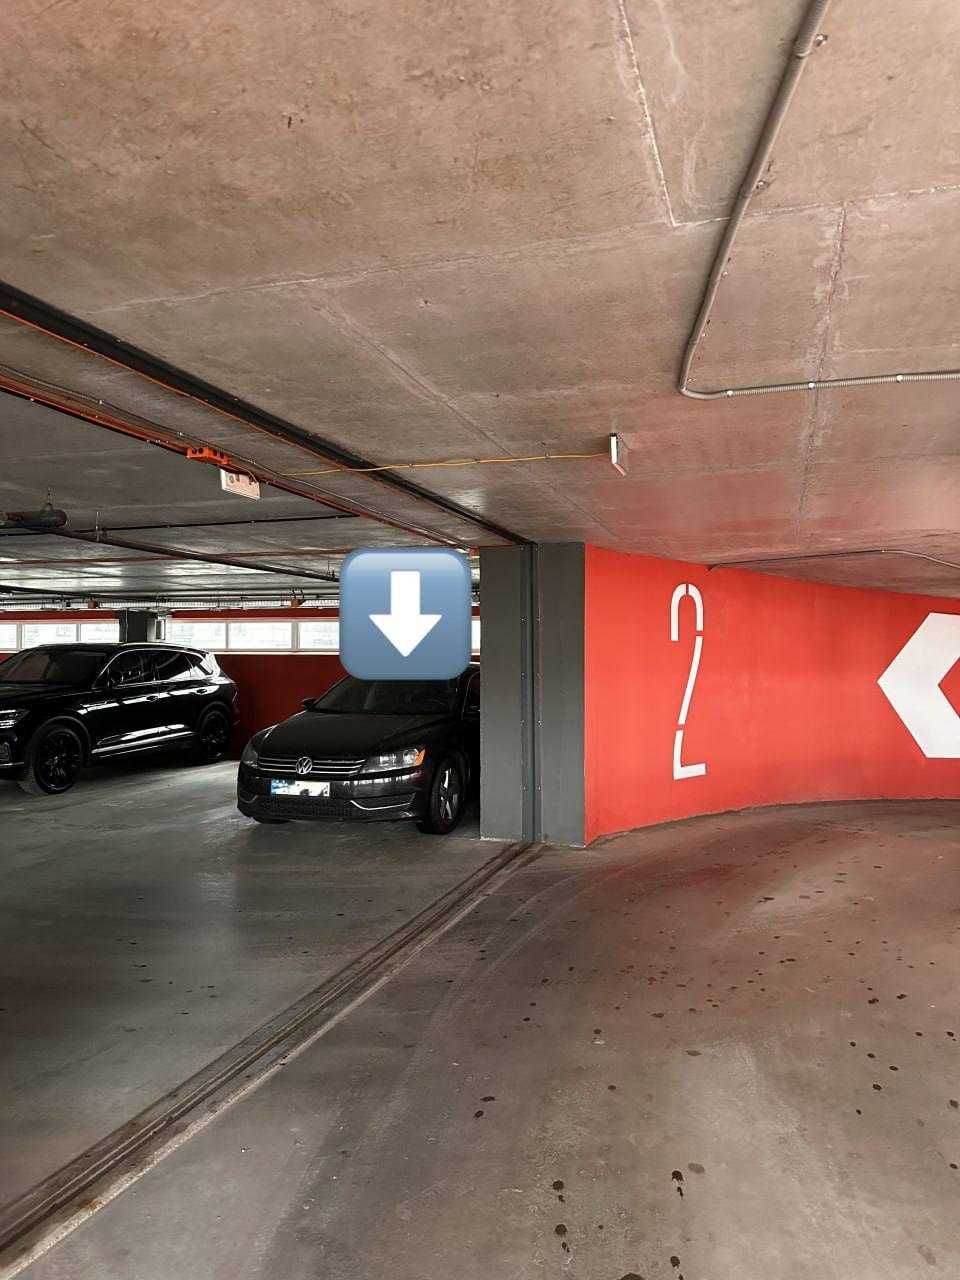 ПРОДАМ паркоместо/паркинг 16 метров, ЖК Галактика на 2 этаже, закрытый